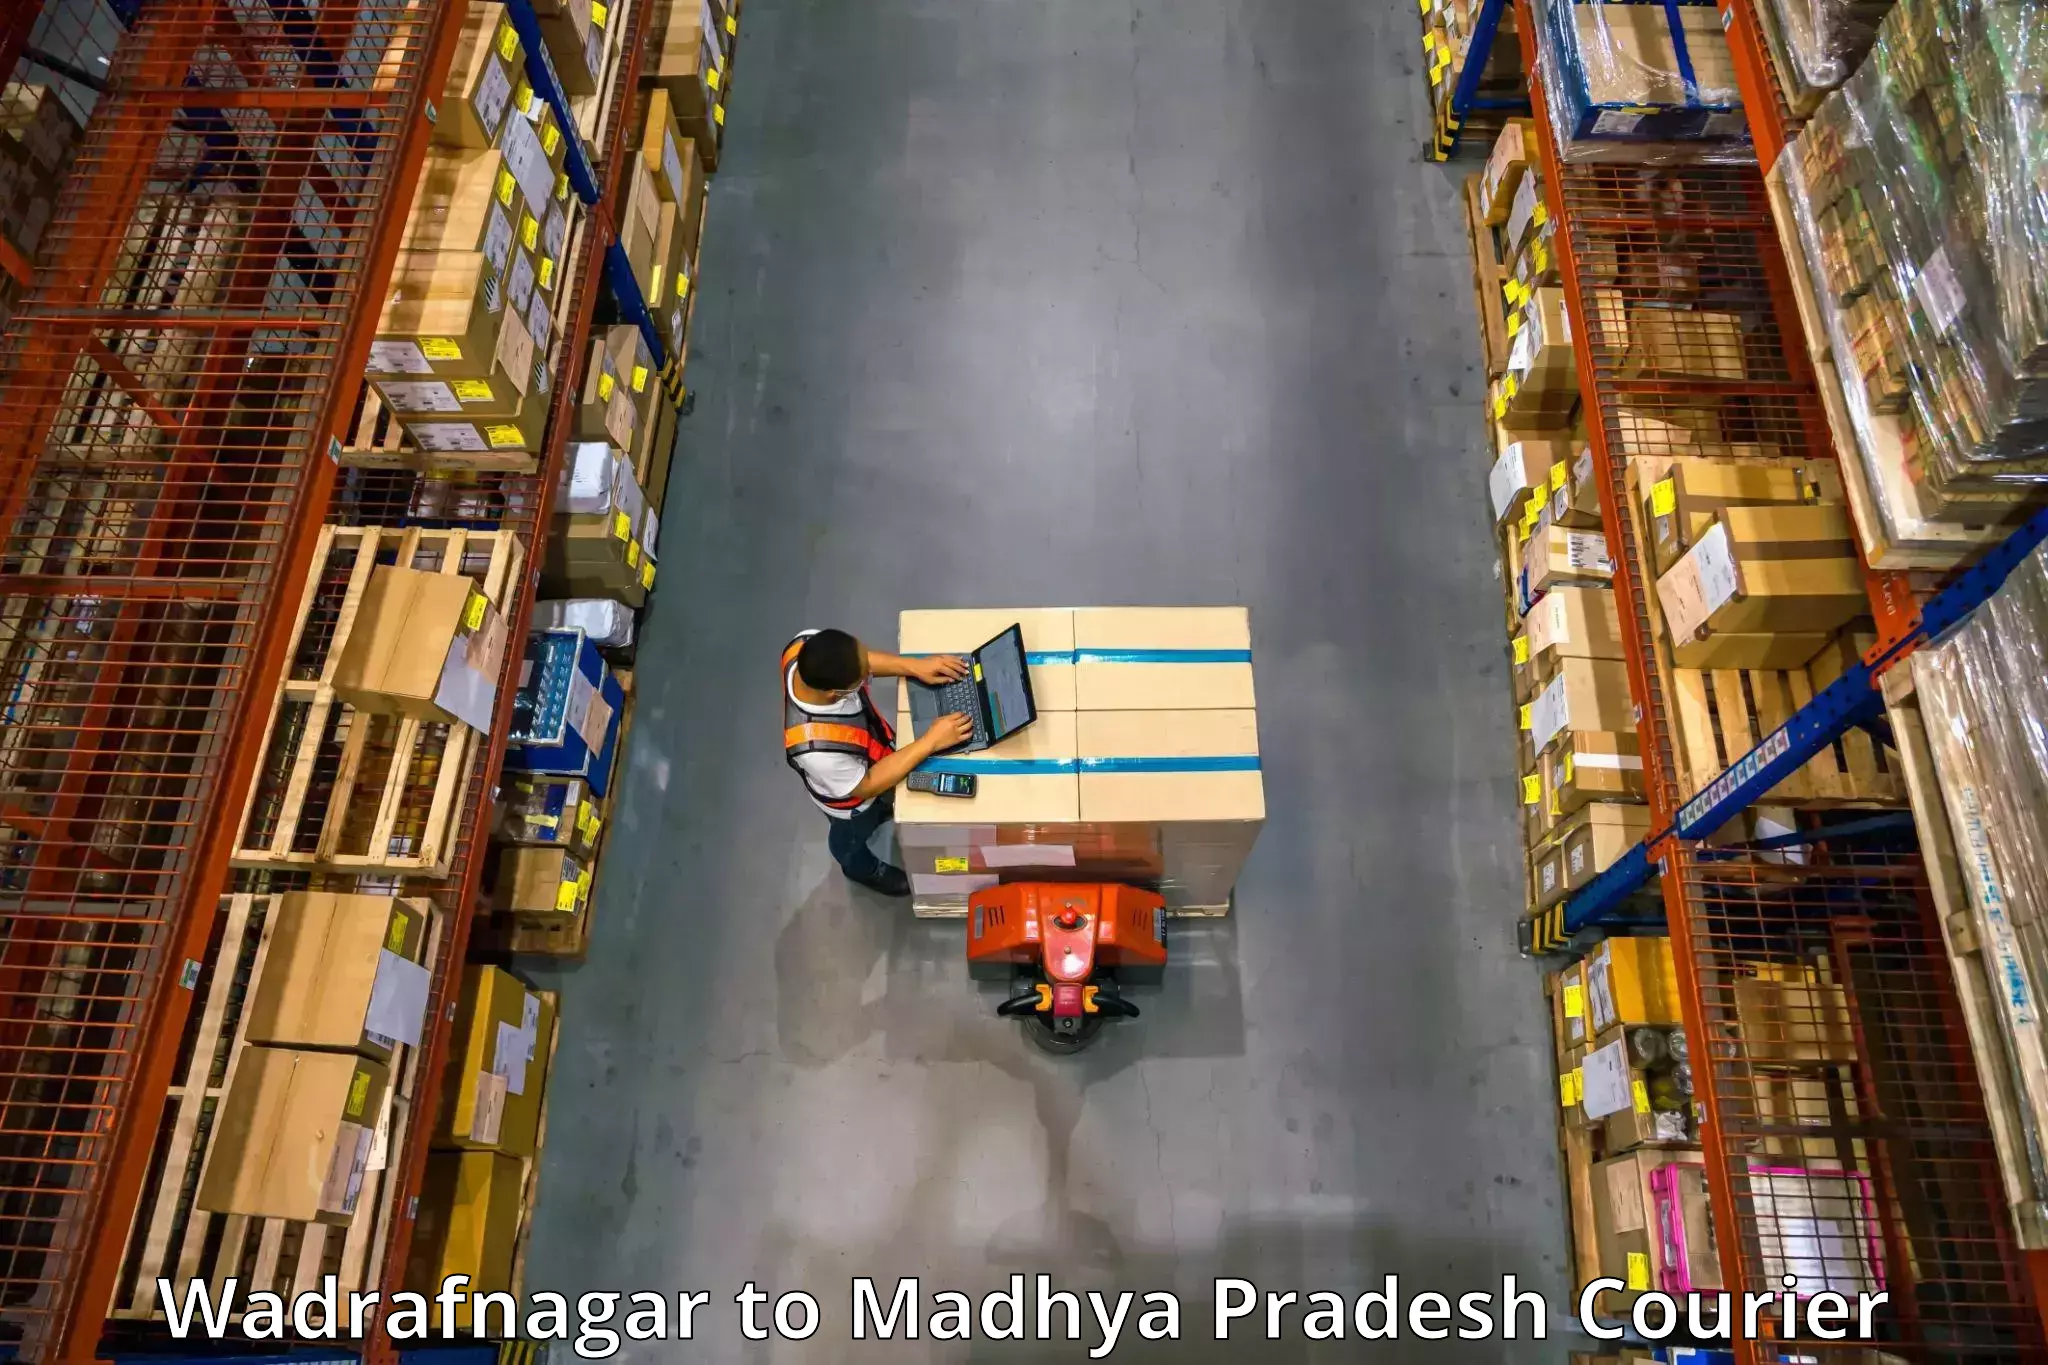 Furniture moving experts Wadrafnagar to Rampur Naikin